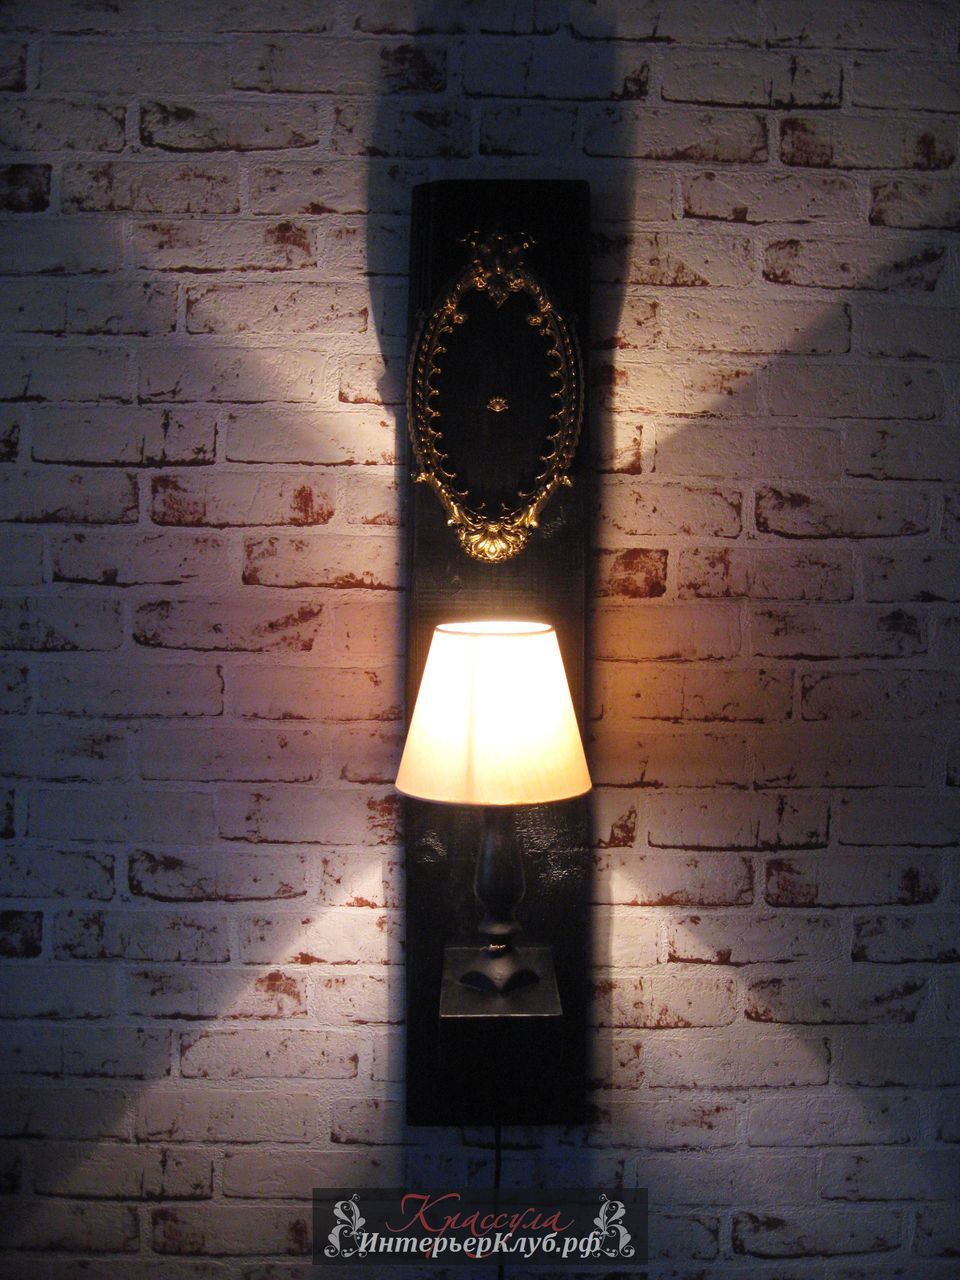 16 Светильник Око - амбарная доска, с элементами декора, цвет черный - золото. Эксклюзивные светильники ручной работы